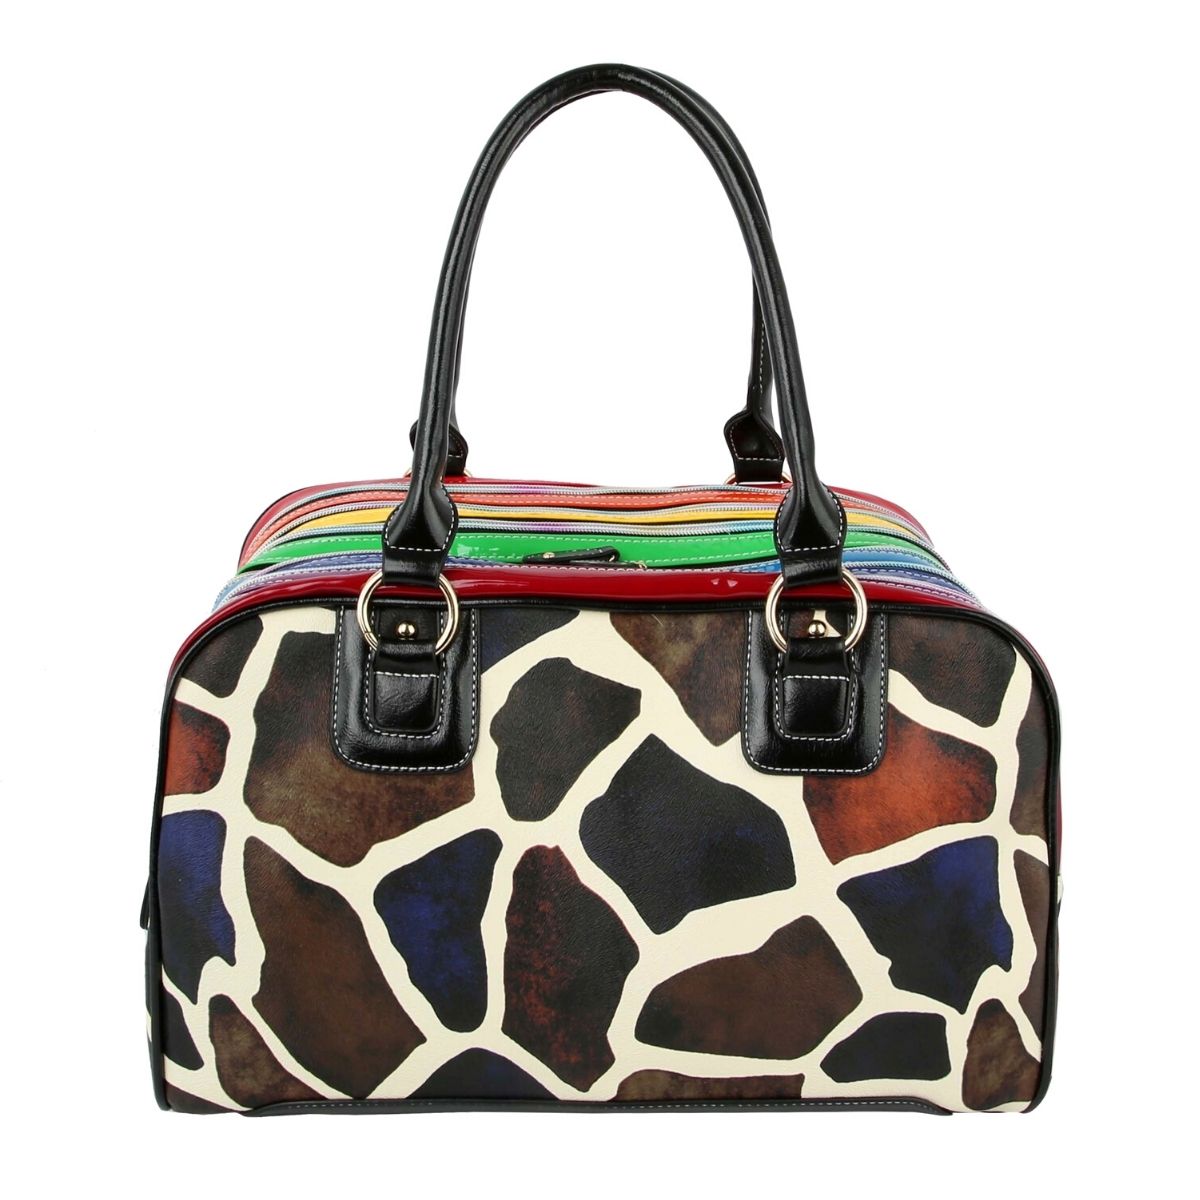 Giraffe Rainbow Zipper Handbag